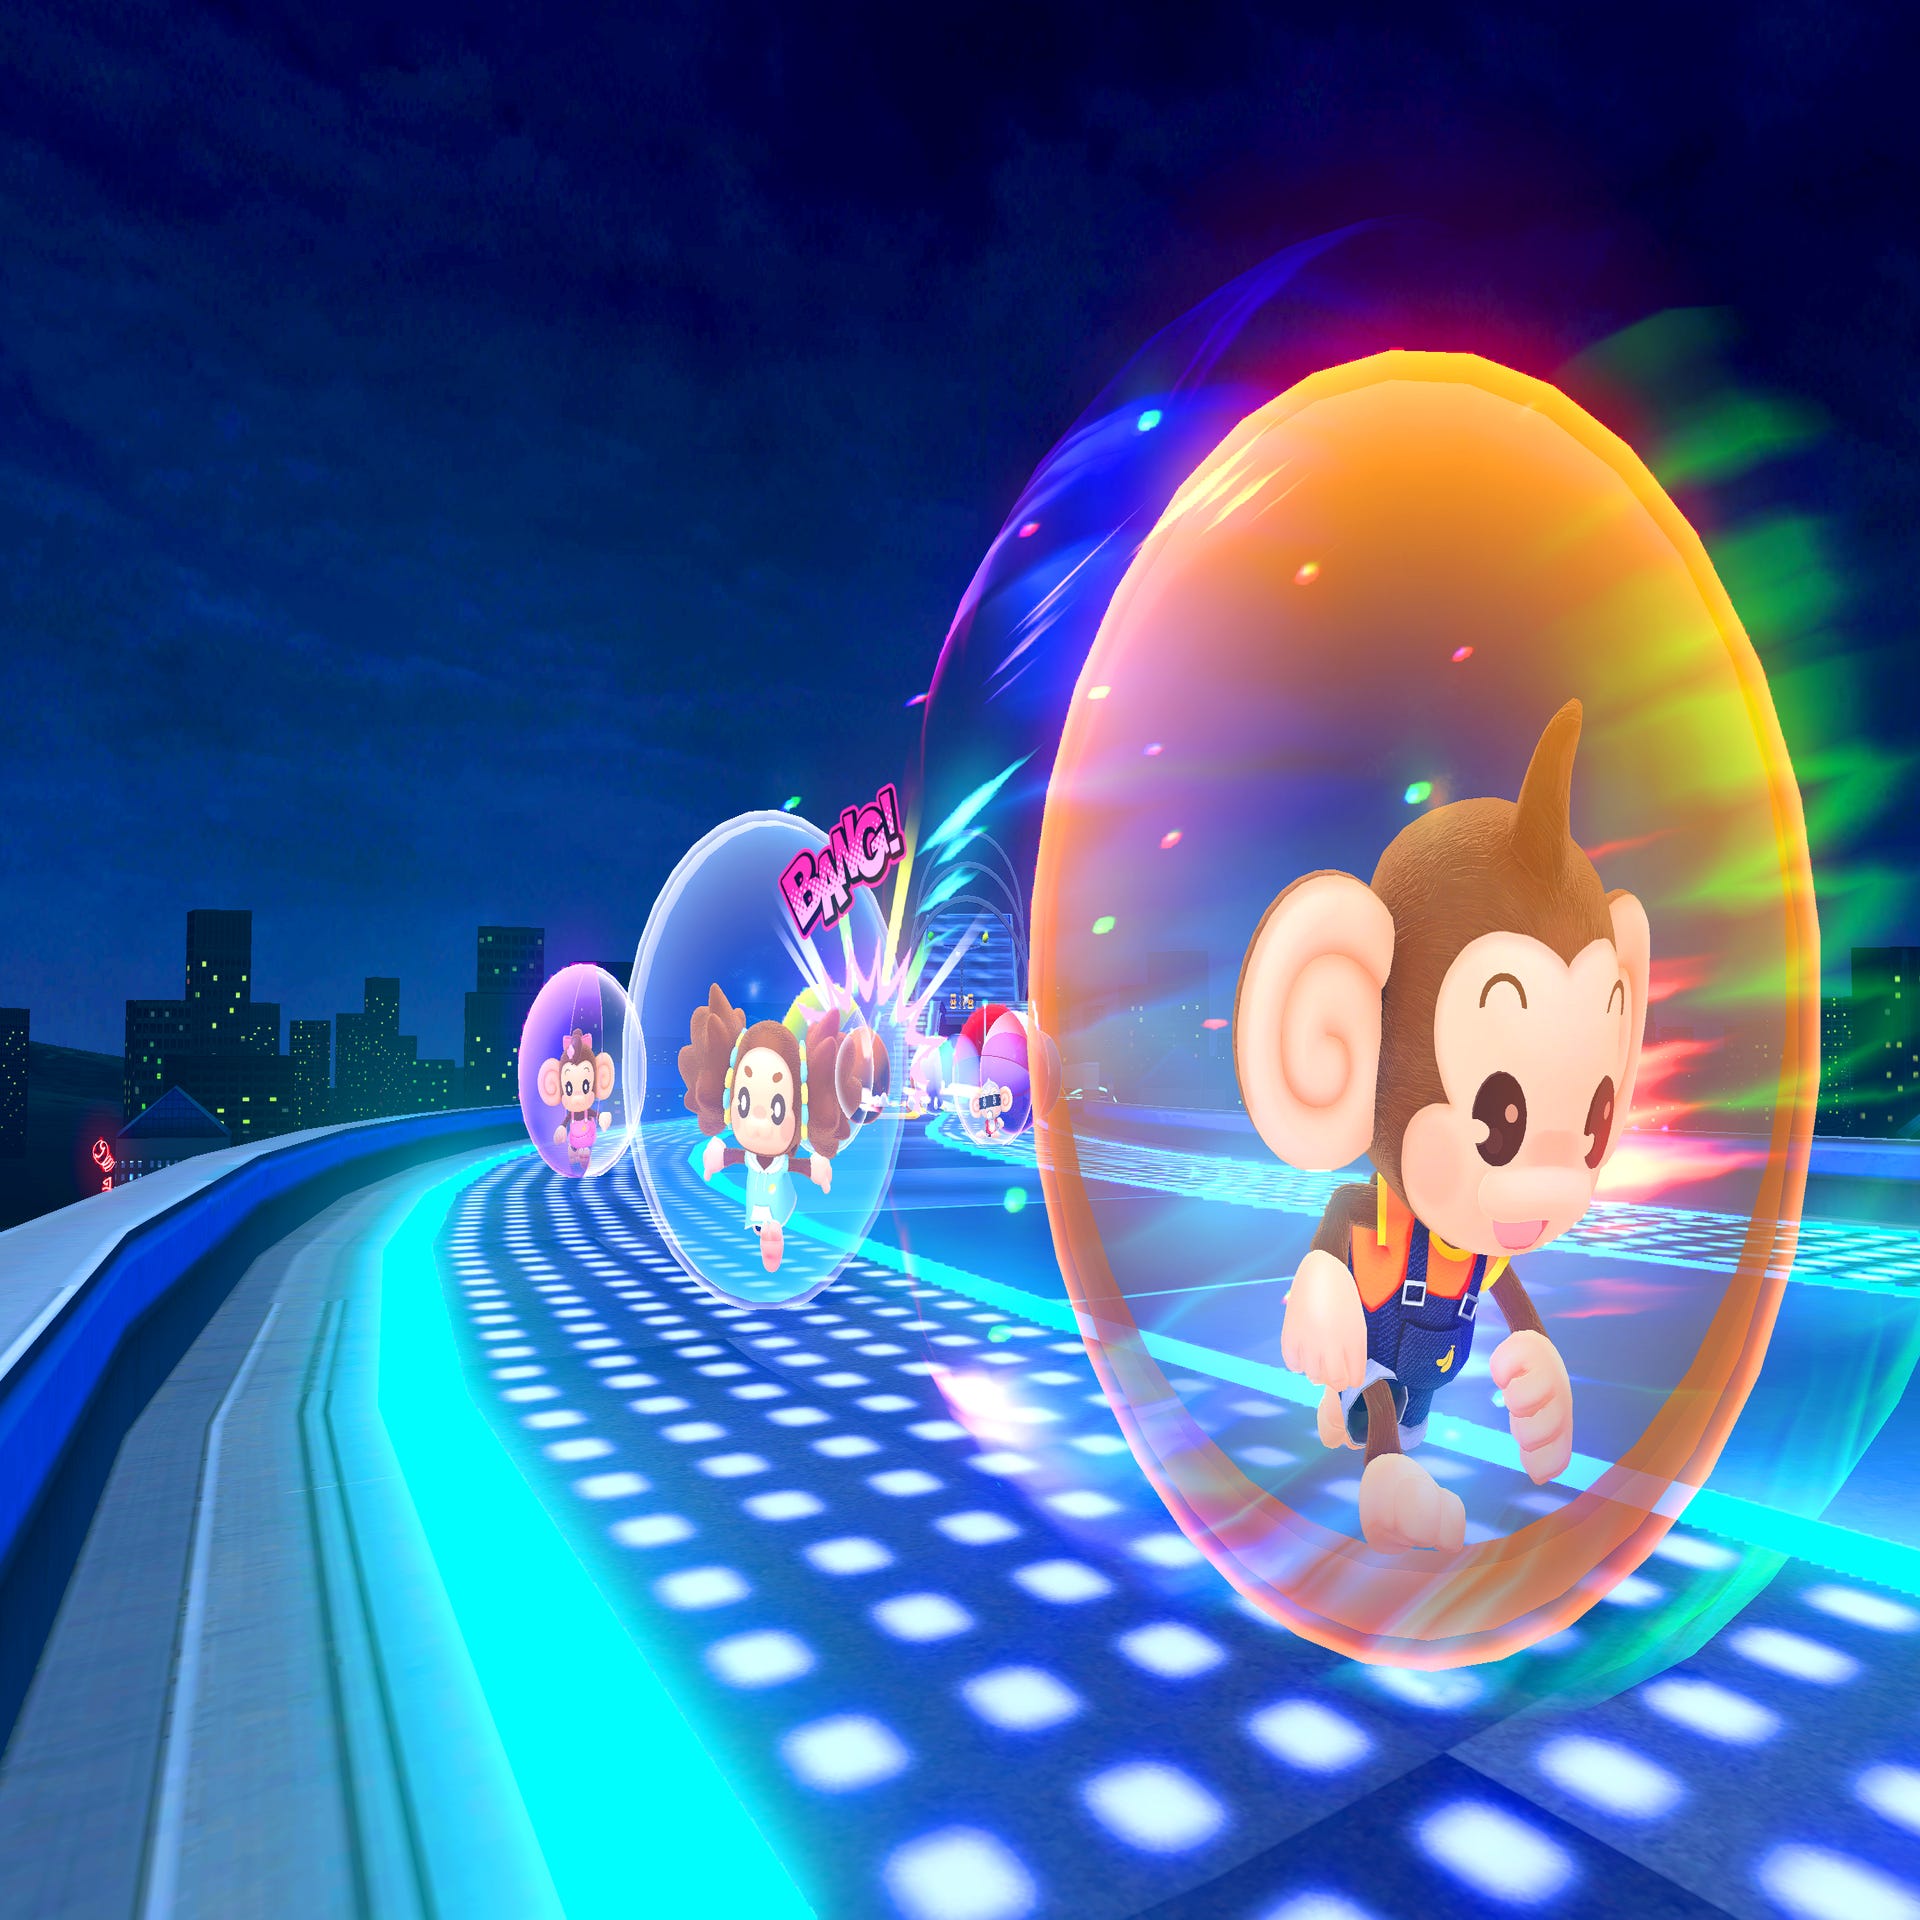 Super Monkey Ball Banana Rumble 16-player online mayhem revealed in new Battle Modes trailer from SEGA